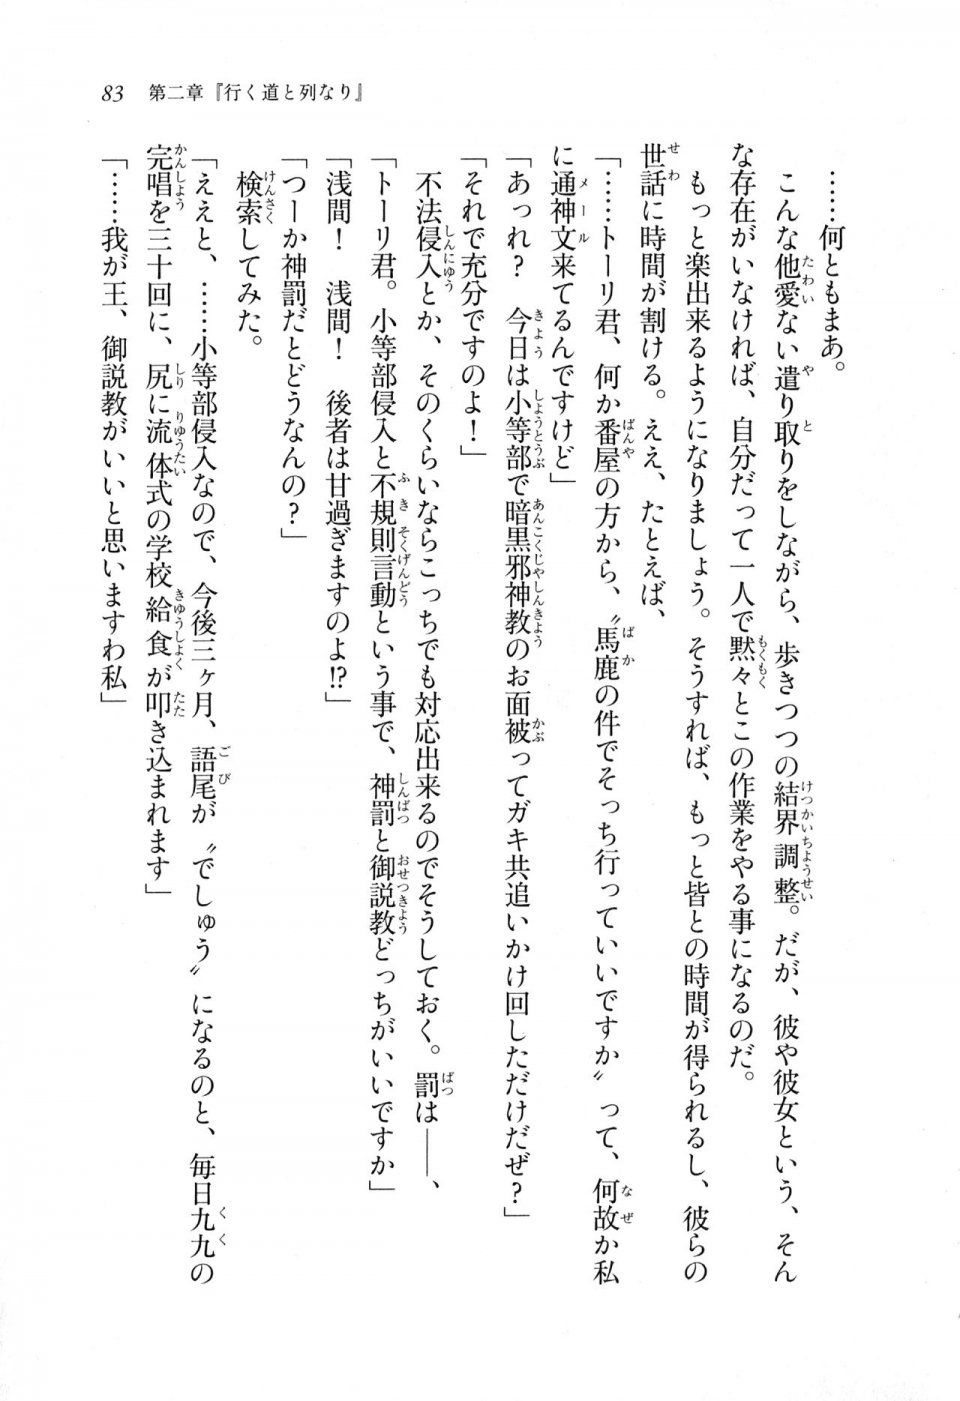 Kyoukai Senjou no Horizon LN Sidestory Vol 1 - Photo #81